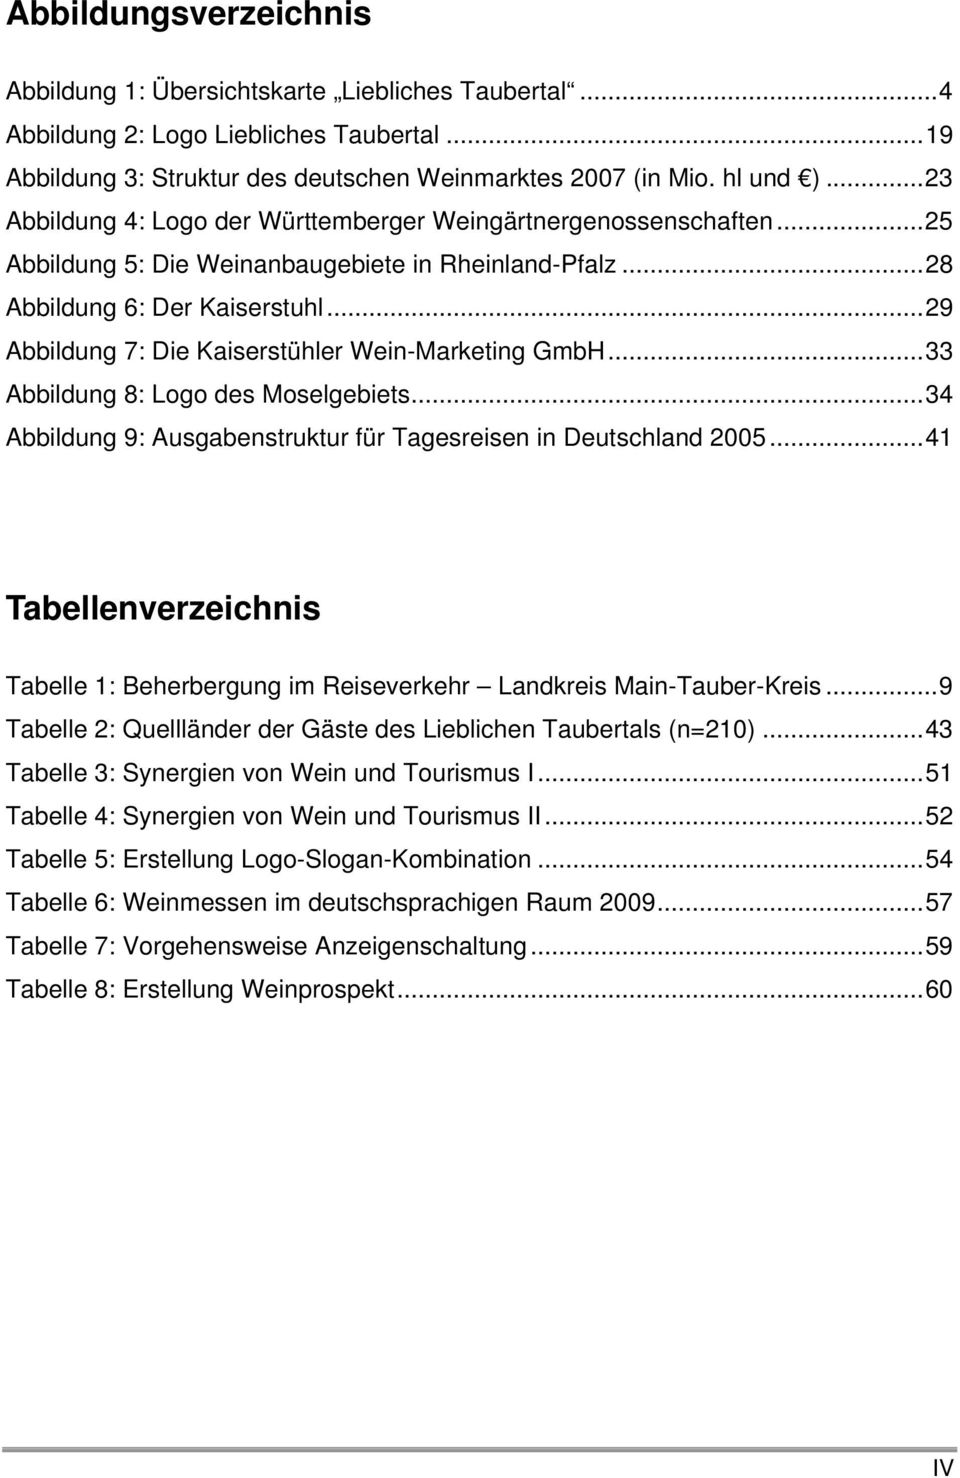 ..29 Abbildung 7: Die Kaiserstühler Wein-Marketing GmbH...33 Abbildung 8: Logo des Moselgebiets...34 Abbildung 9: Ausgabenstruktur für Tagesreisen in Deutschland 2005.